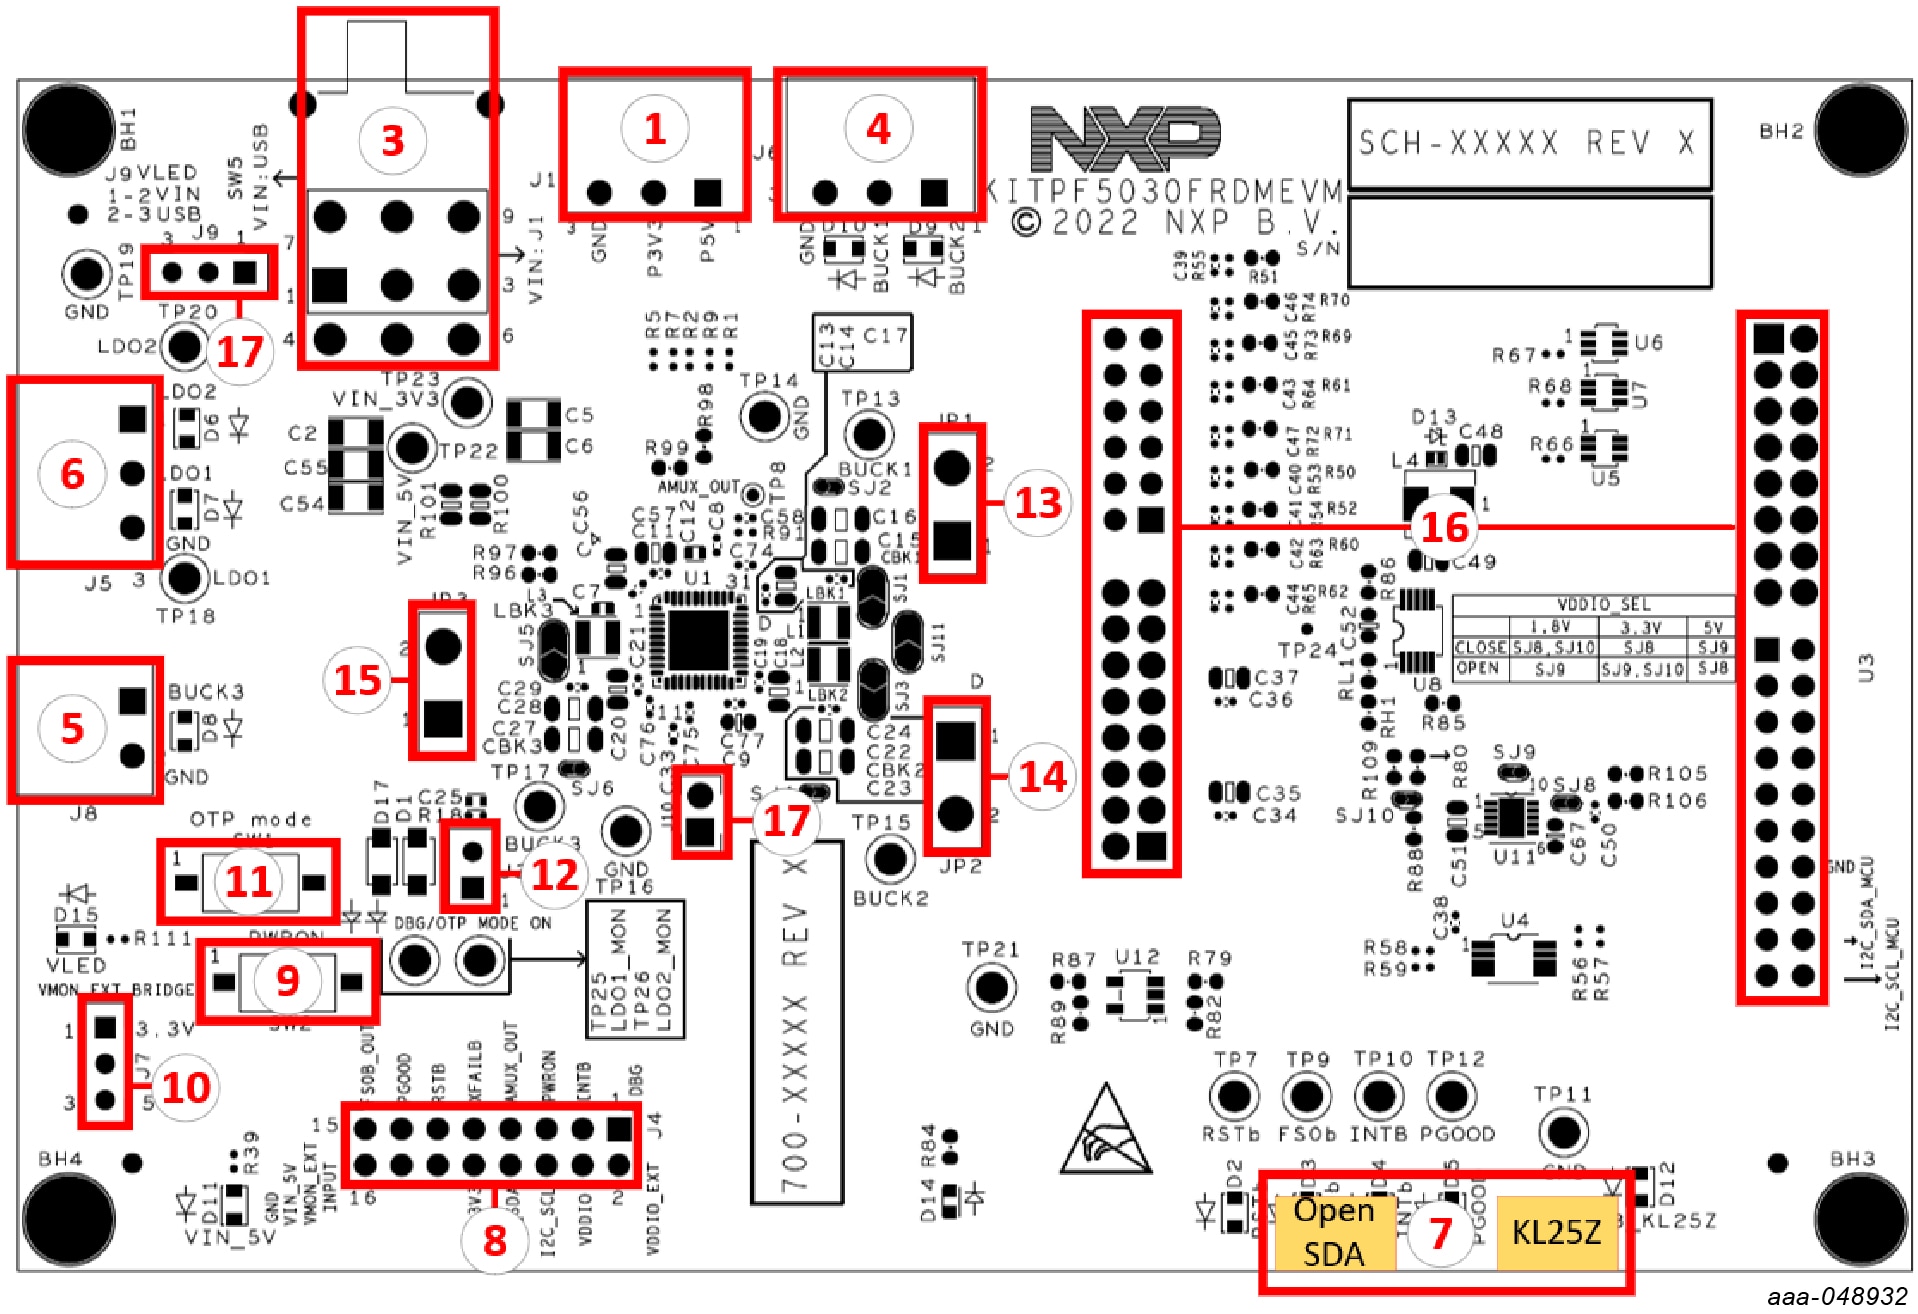 KITPF5030FRDMEVM Board Components